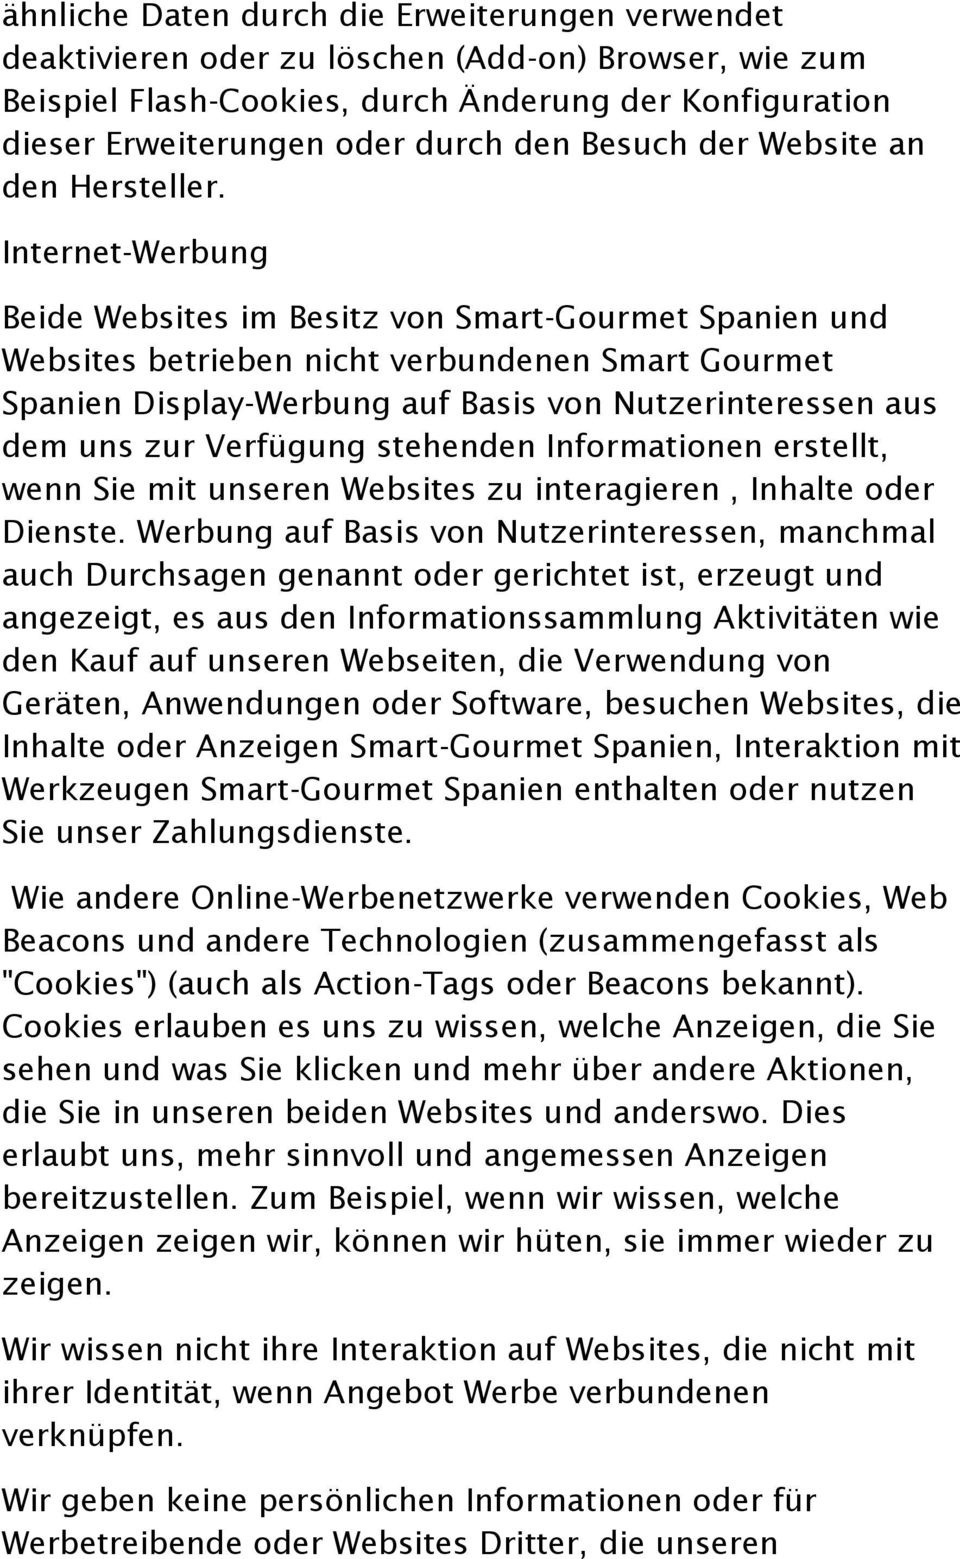 Internet-Werbung Beide Websites im Besitz von Smart-Gourmet Spanien und Websites betrieben nicht verbundenen Smart Gourmet Spanien Display-Werbung auf Basis von Nutzerinteressen aus dem uns zur